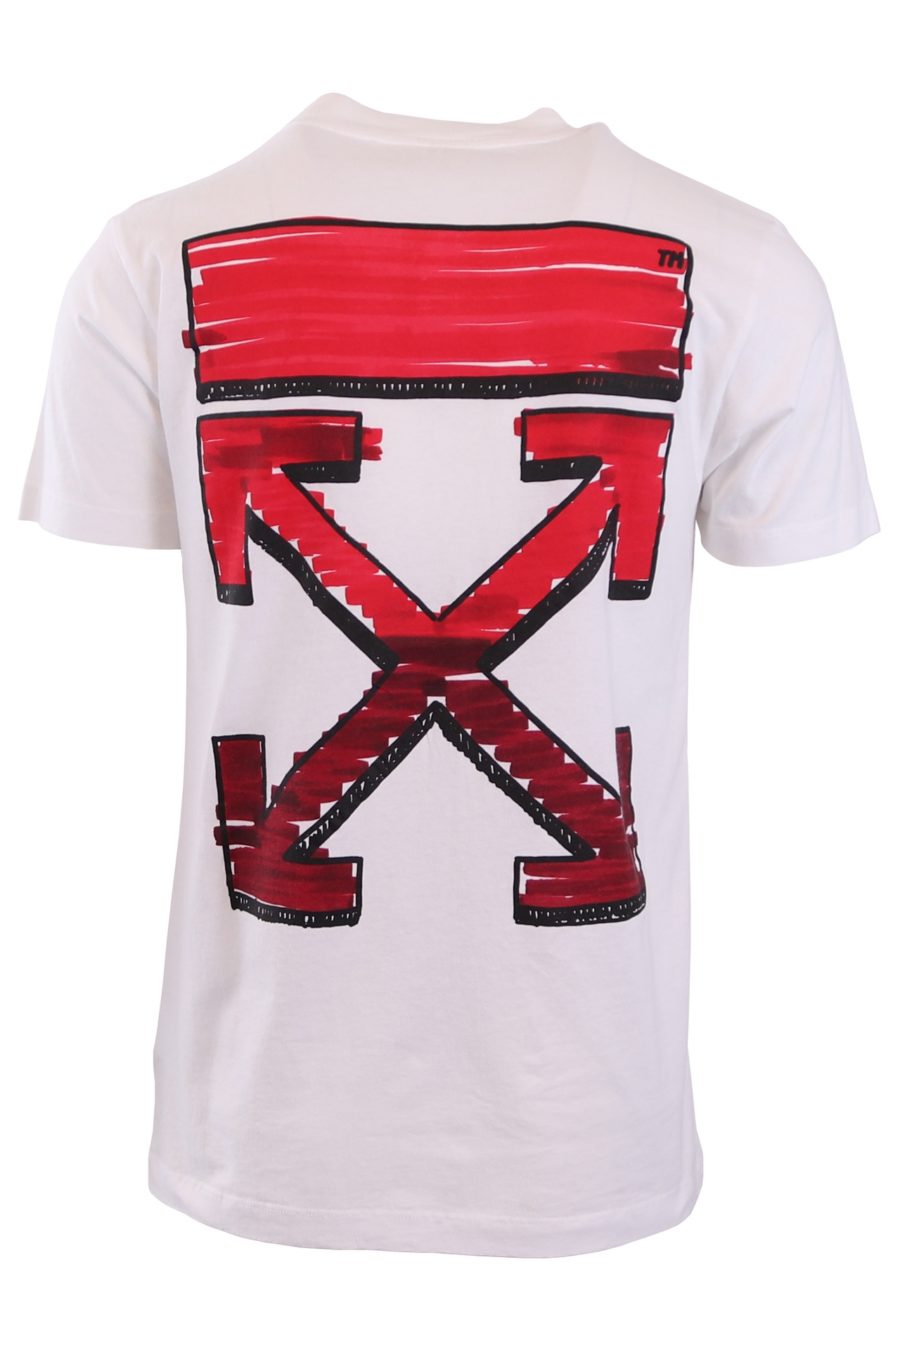 Camiseta Off-White blanca con flechas rojas - d4cad3946bec5e0140592f51109232e91ce06430